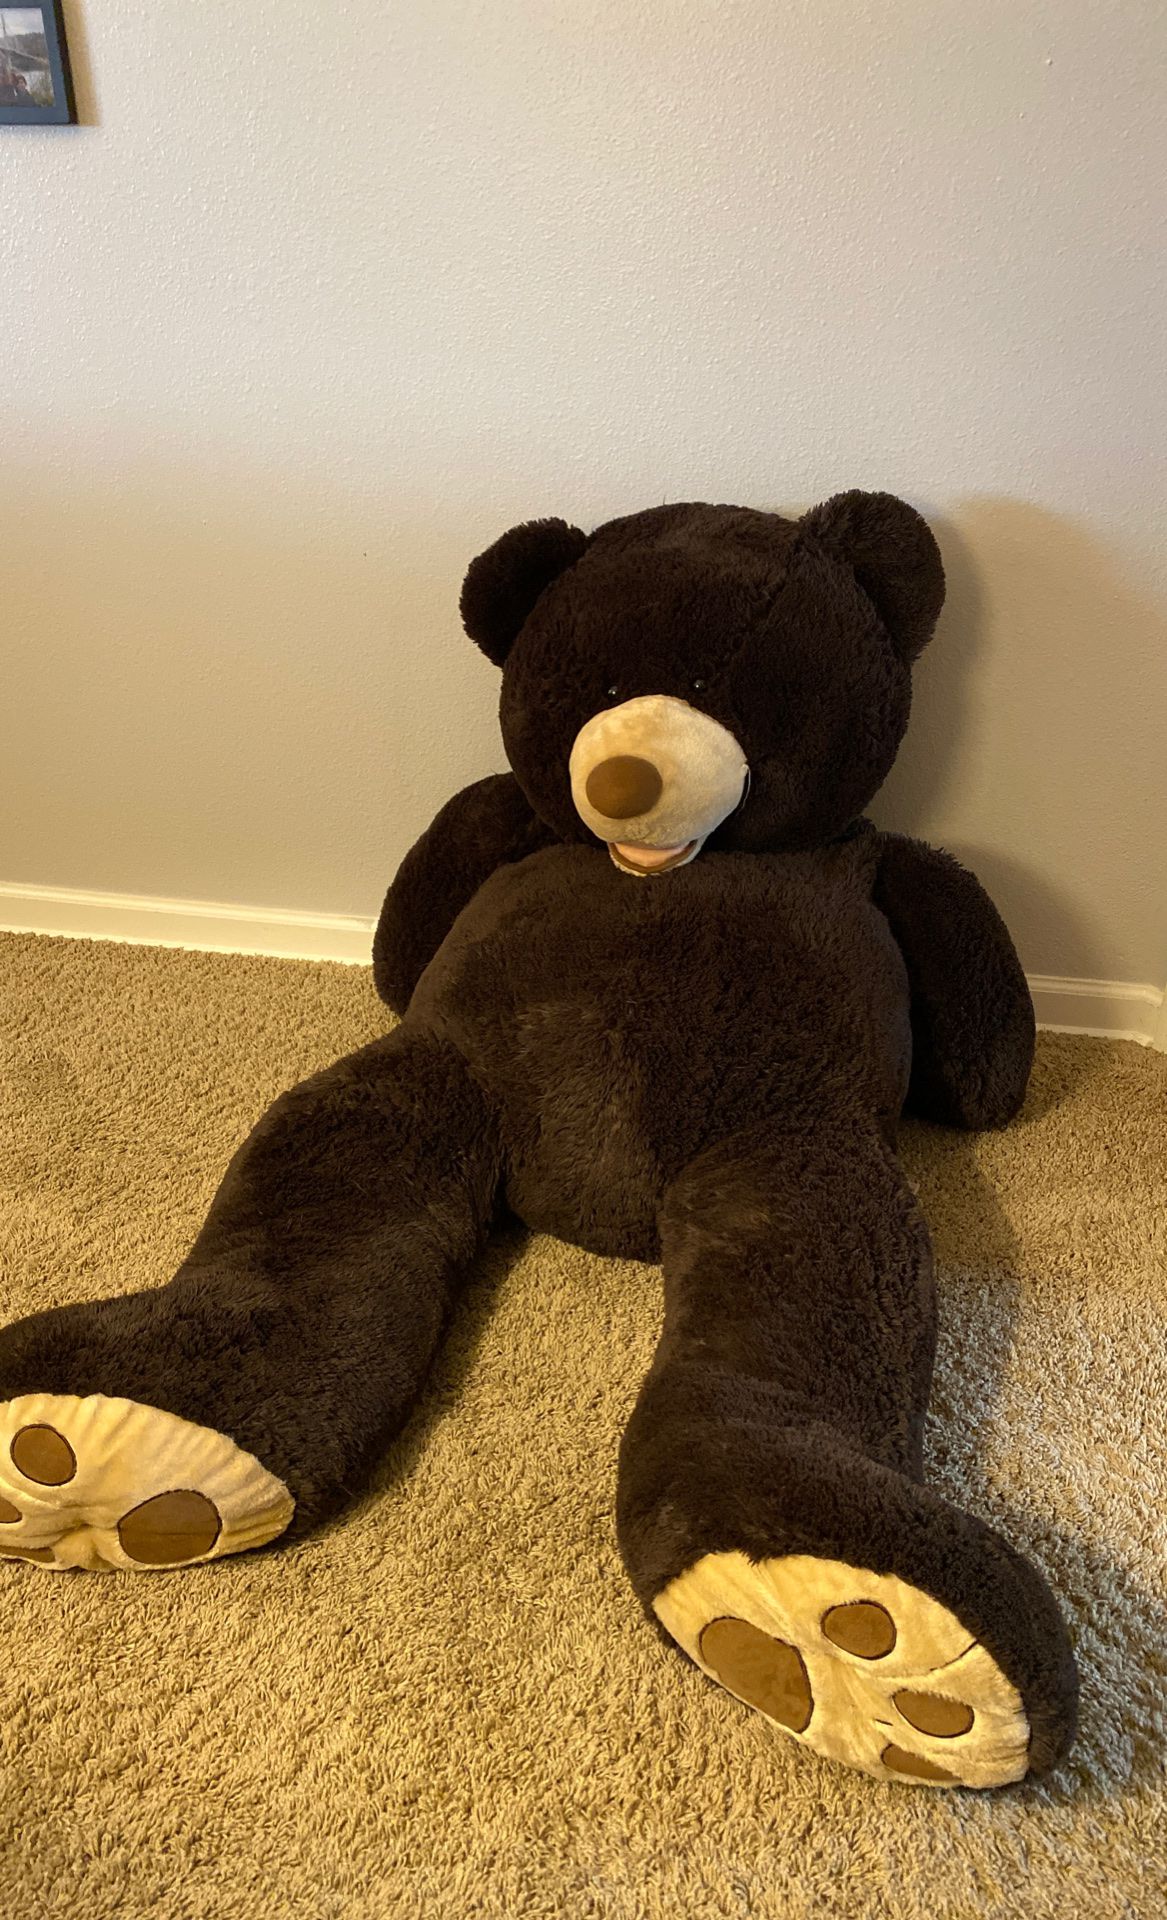 Giant Teddy Bear Stuffed Animal